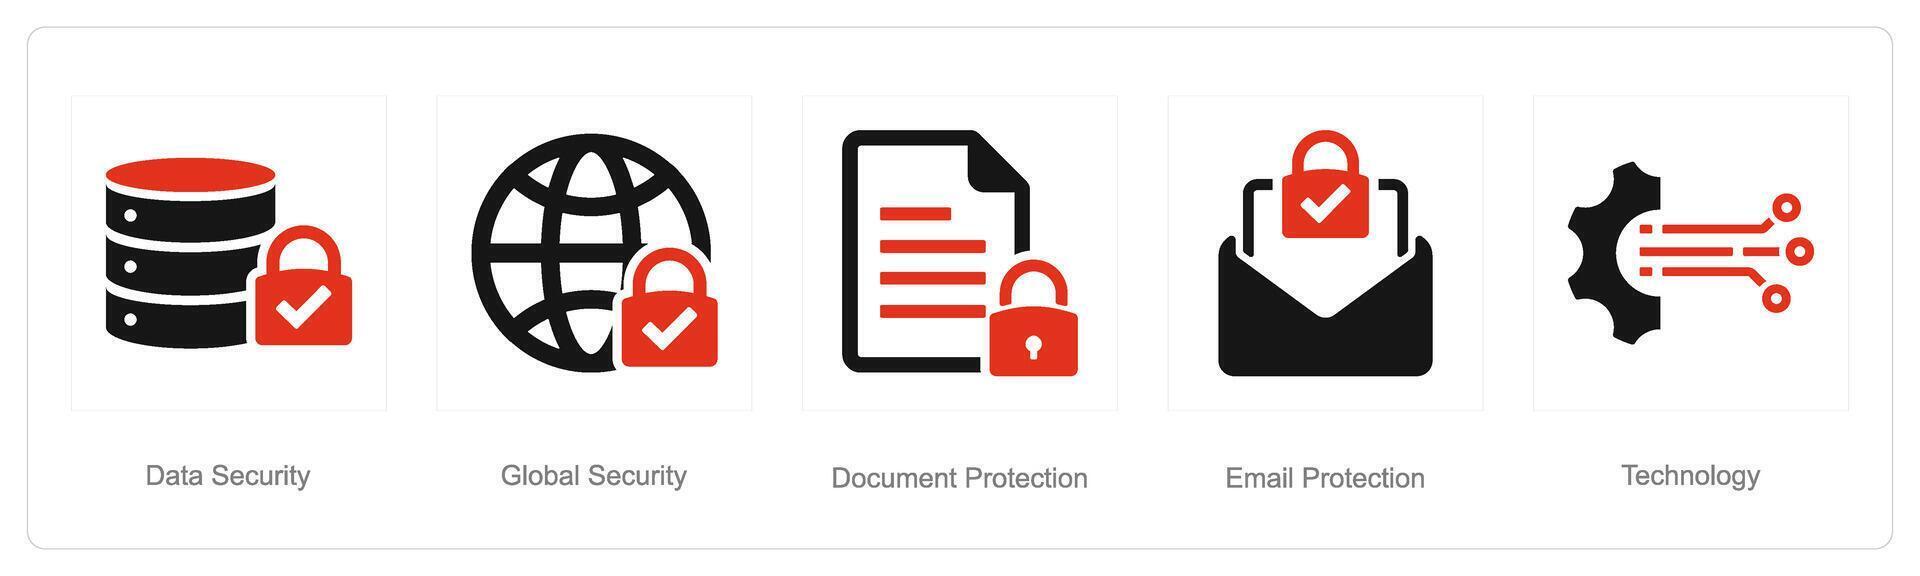 uma conjunto do 5 cyber segurança ícones Como dados segurança, global segurança, documento proteção vetor